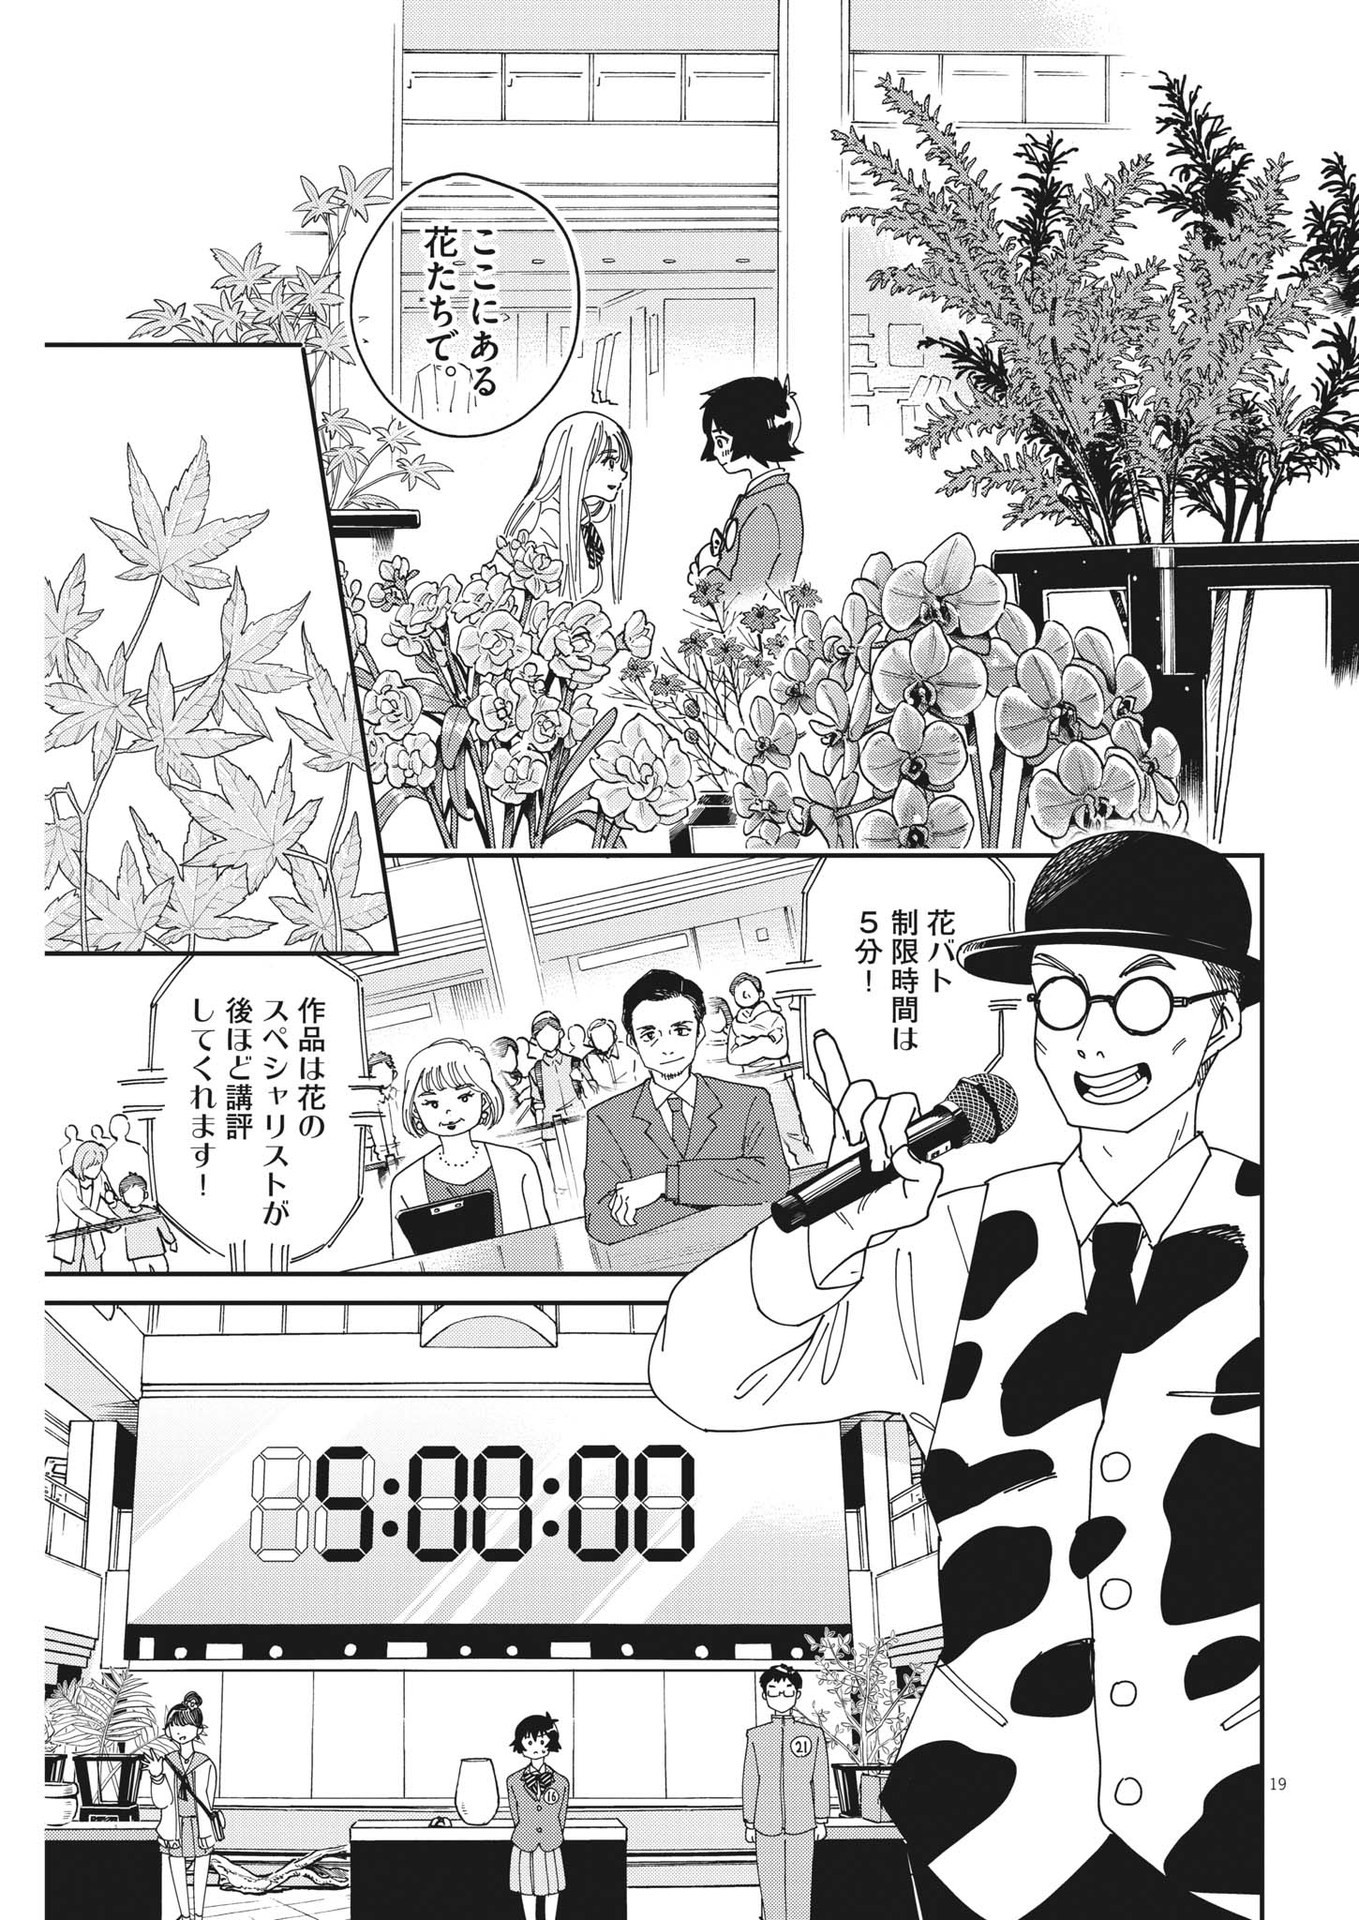 ハナイケル-川北高校華道部- 第3話 - Page 19